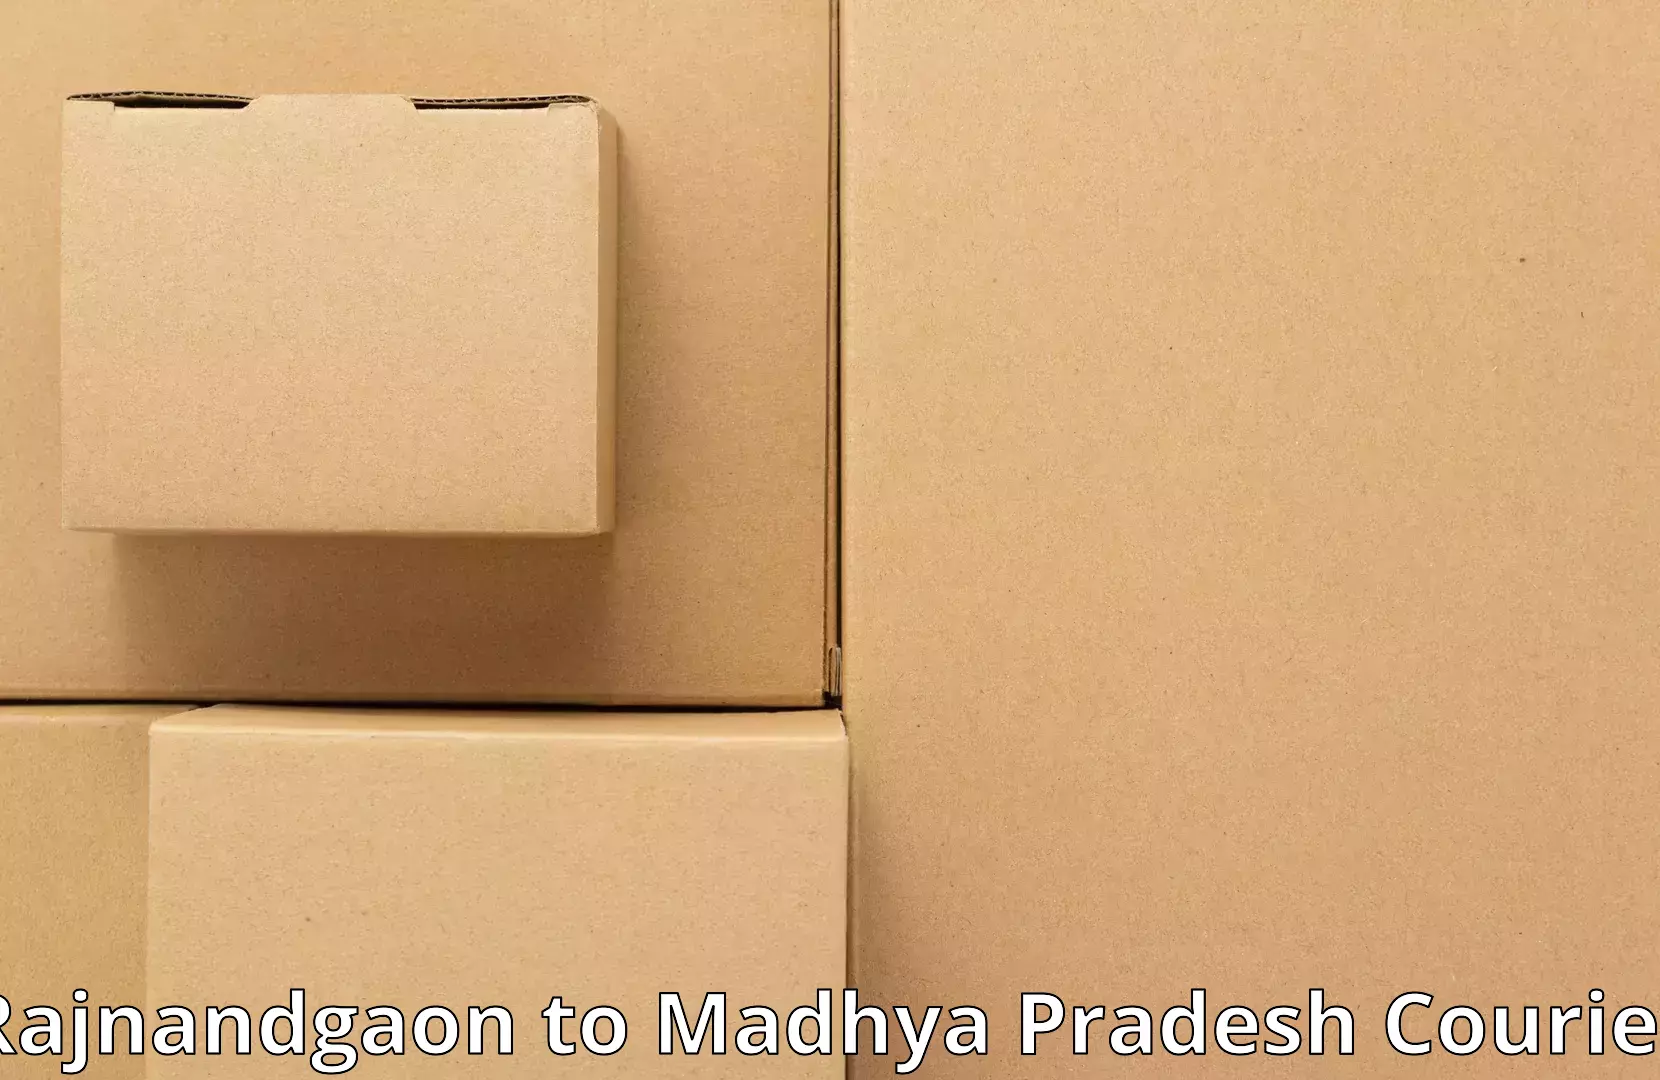 Furniture moving experts in Rajnandgaon to Chhindwara